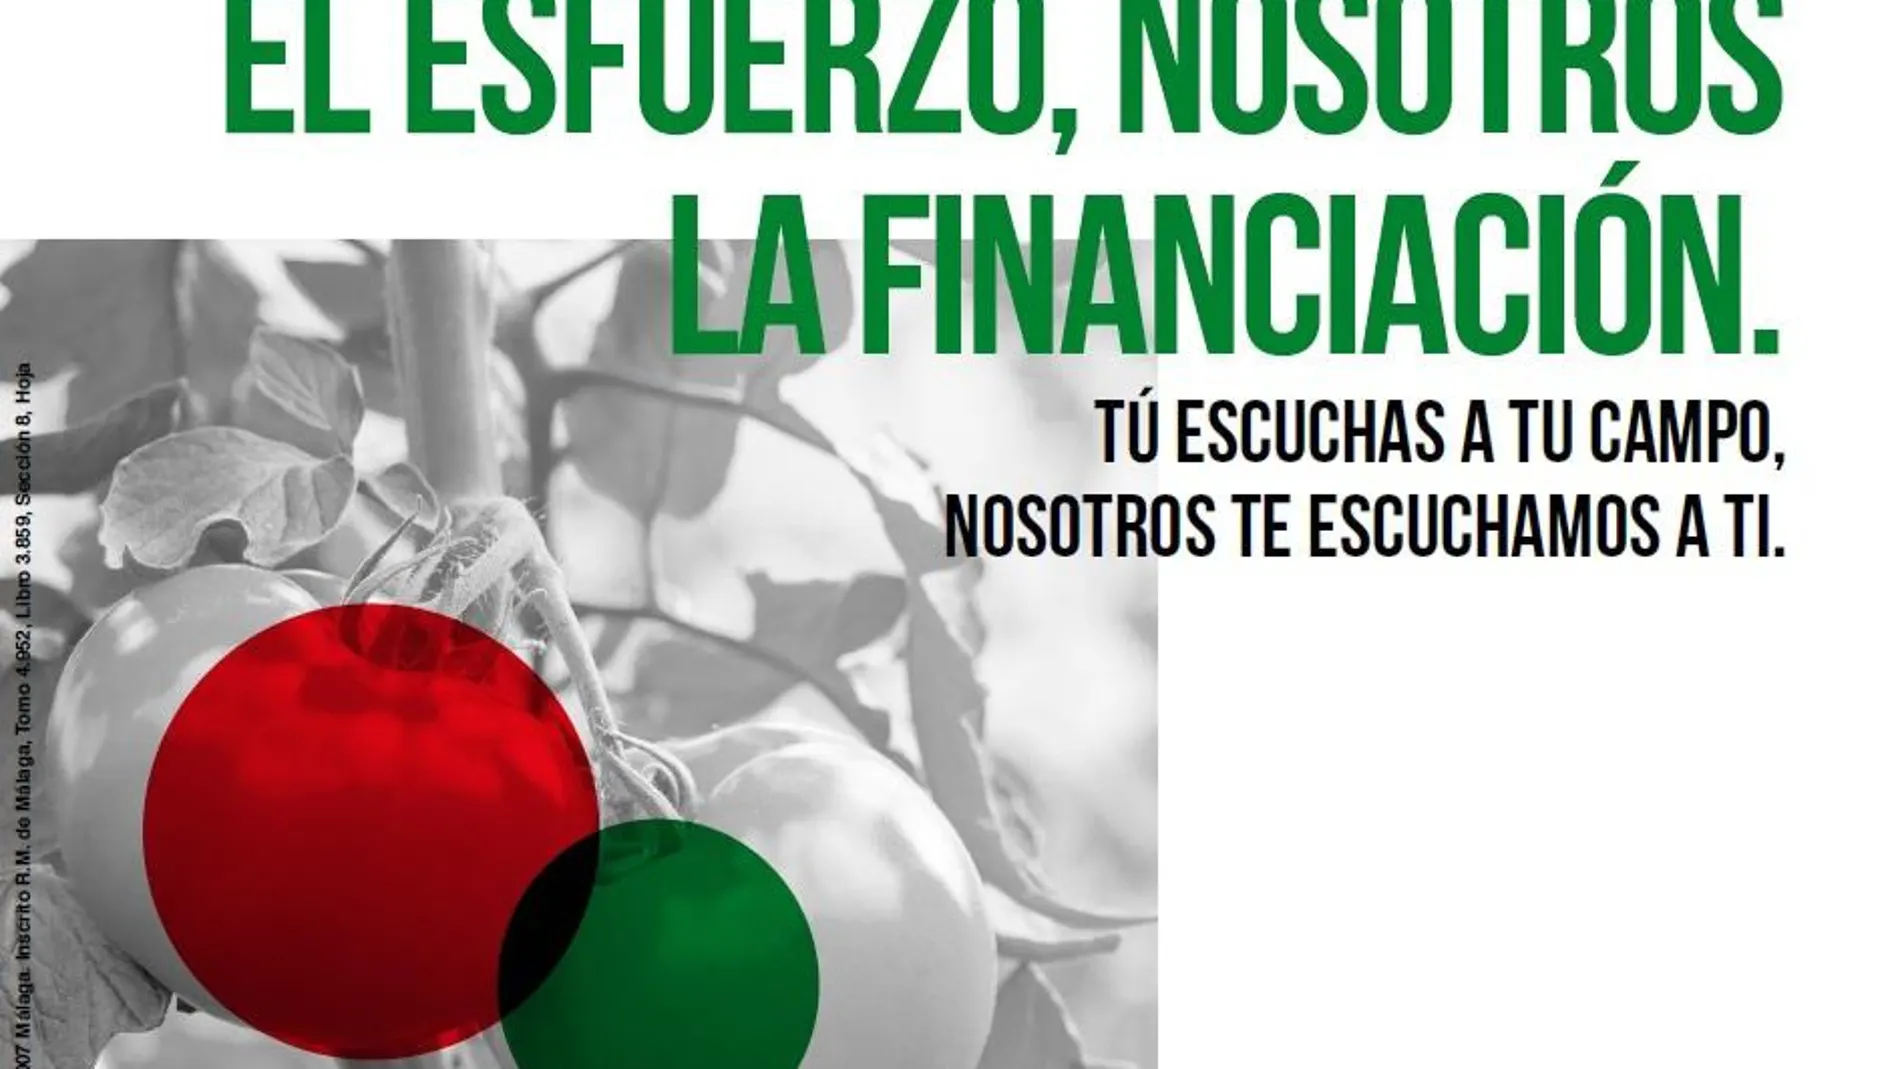 Cartel publicitario que ilustra la nueva campaña de financiación para agricultores / La Razón